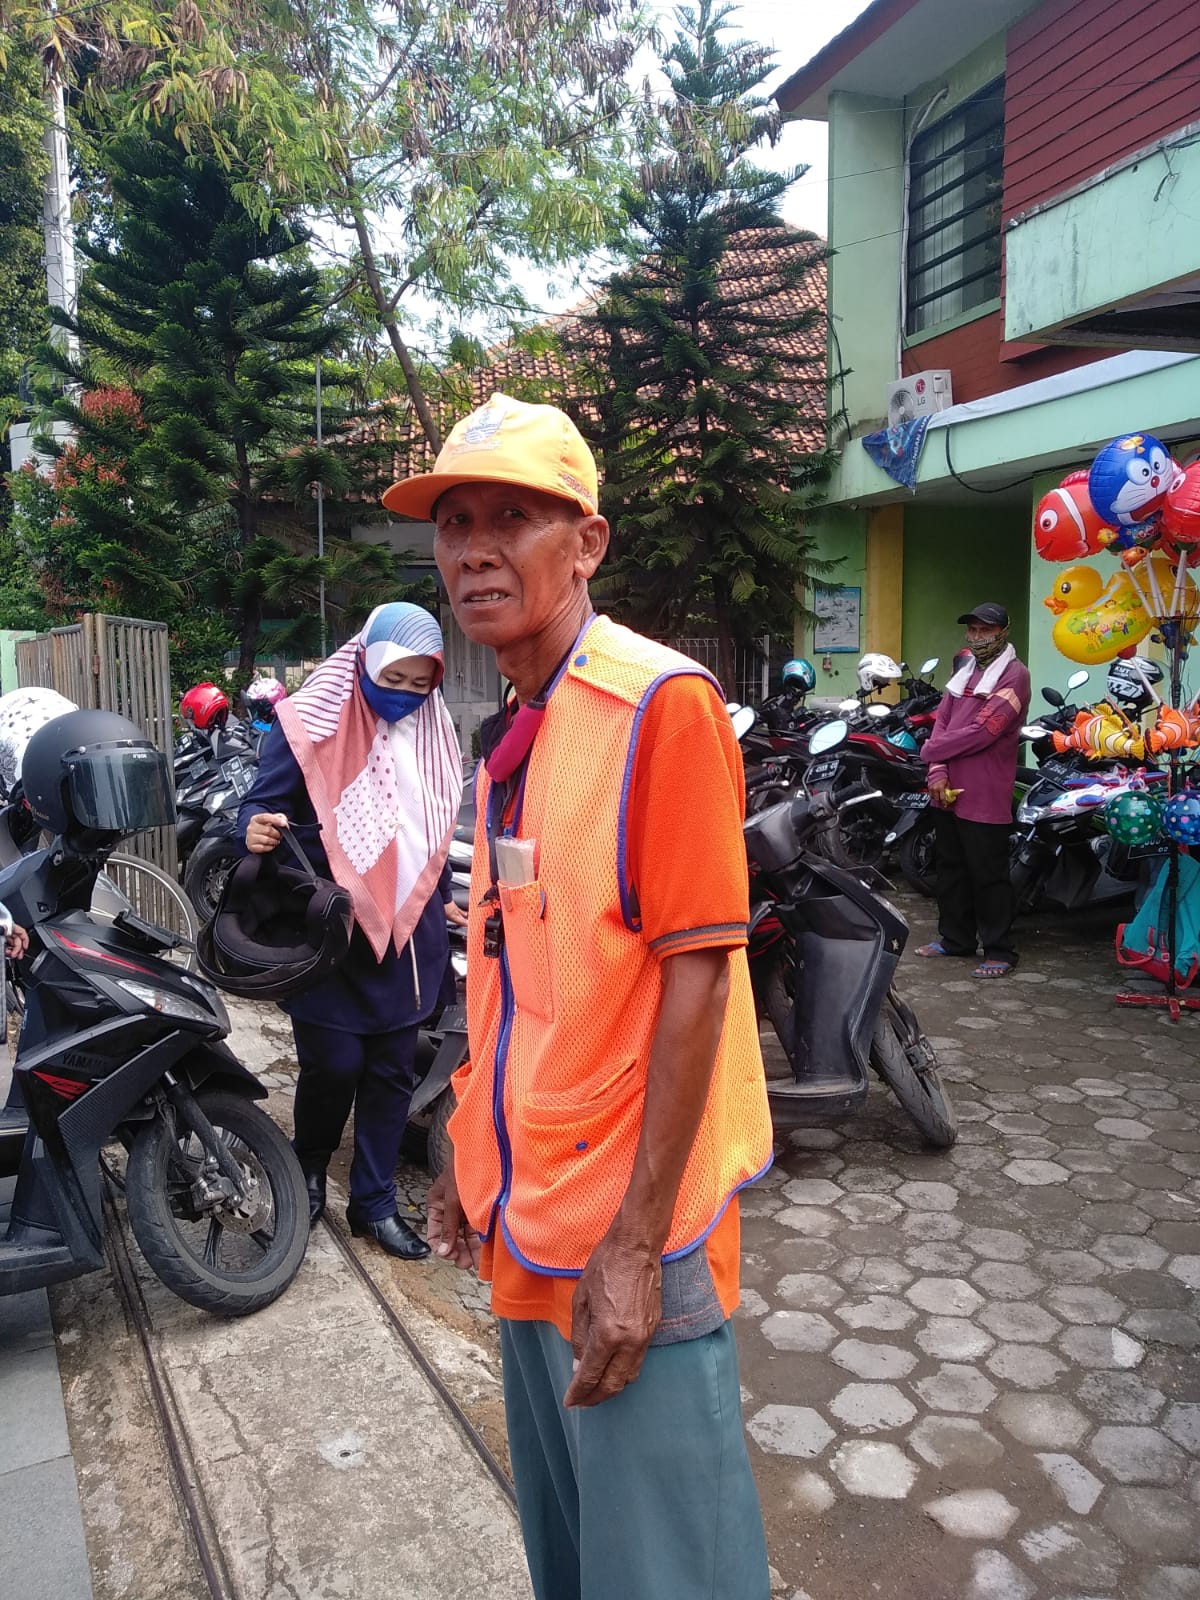 Lakalantas di Jalan Evakuasi,  Tukang Parkir: Saya Disuruh Kepala Puskesmas Menutupi Tubuh Korban